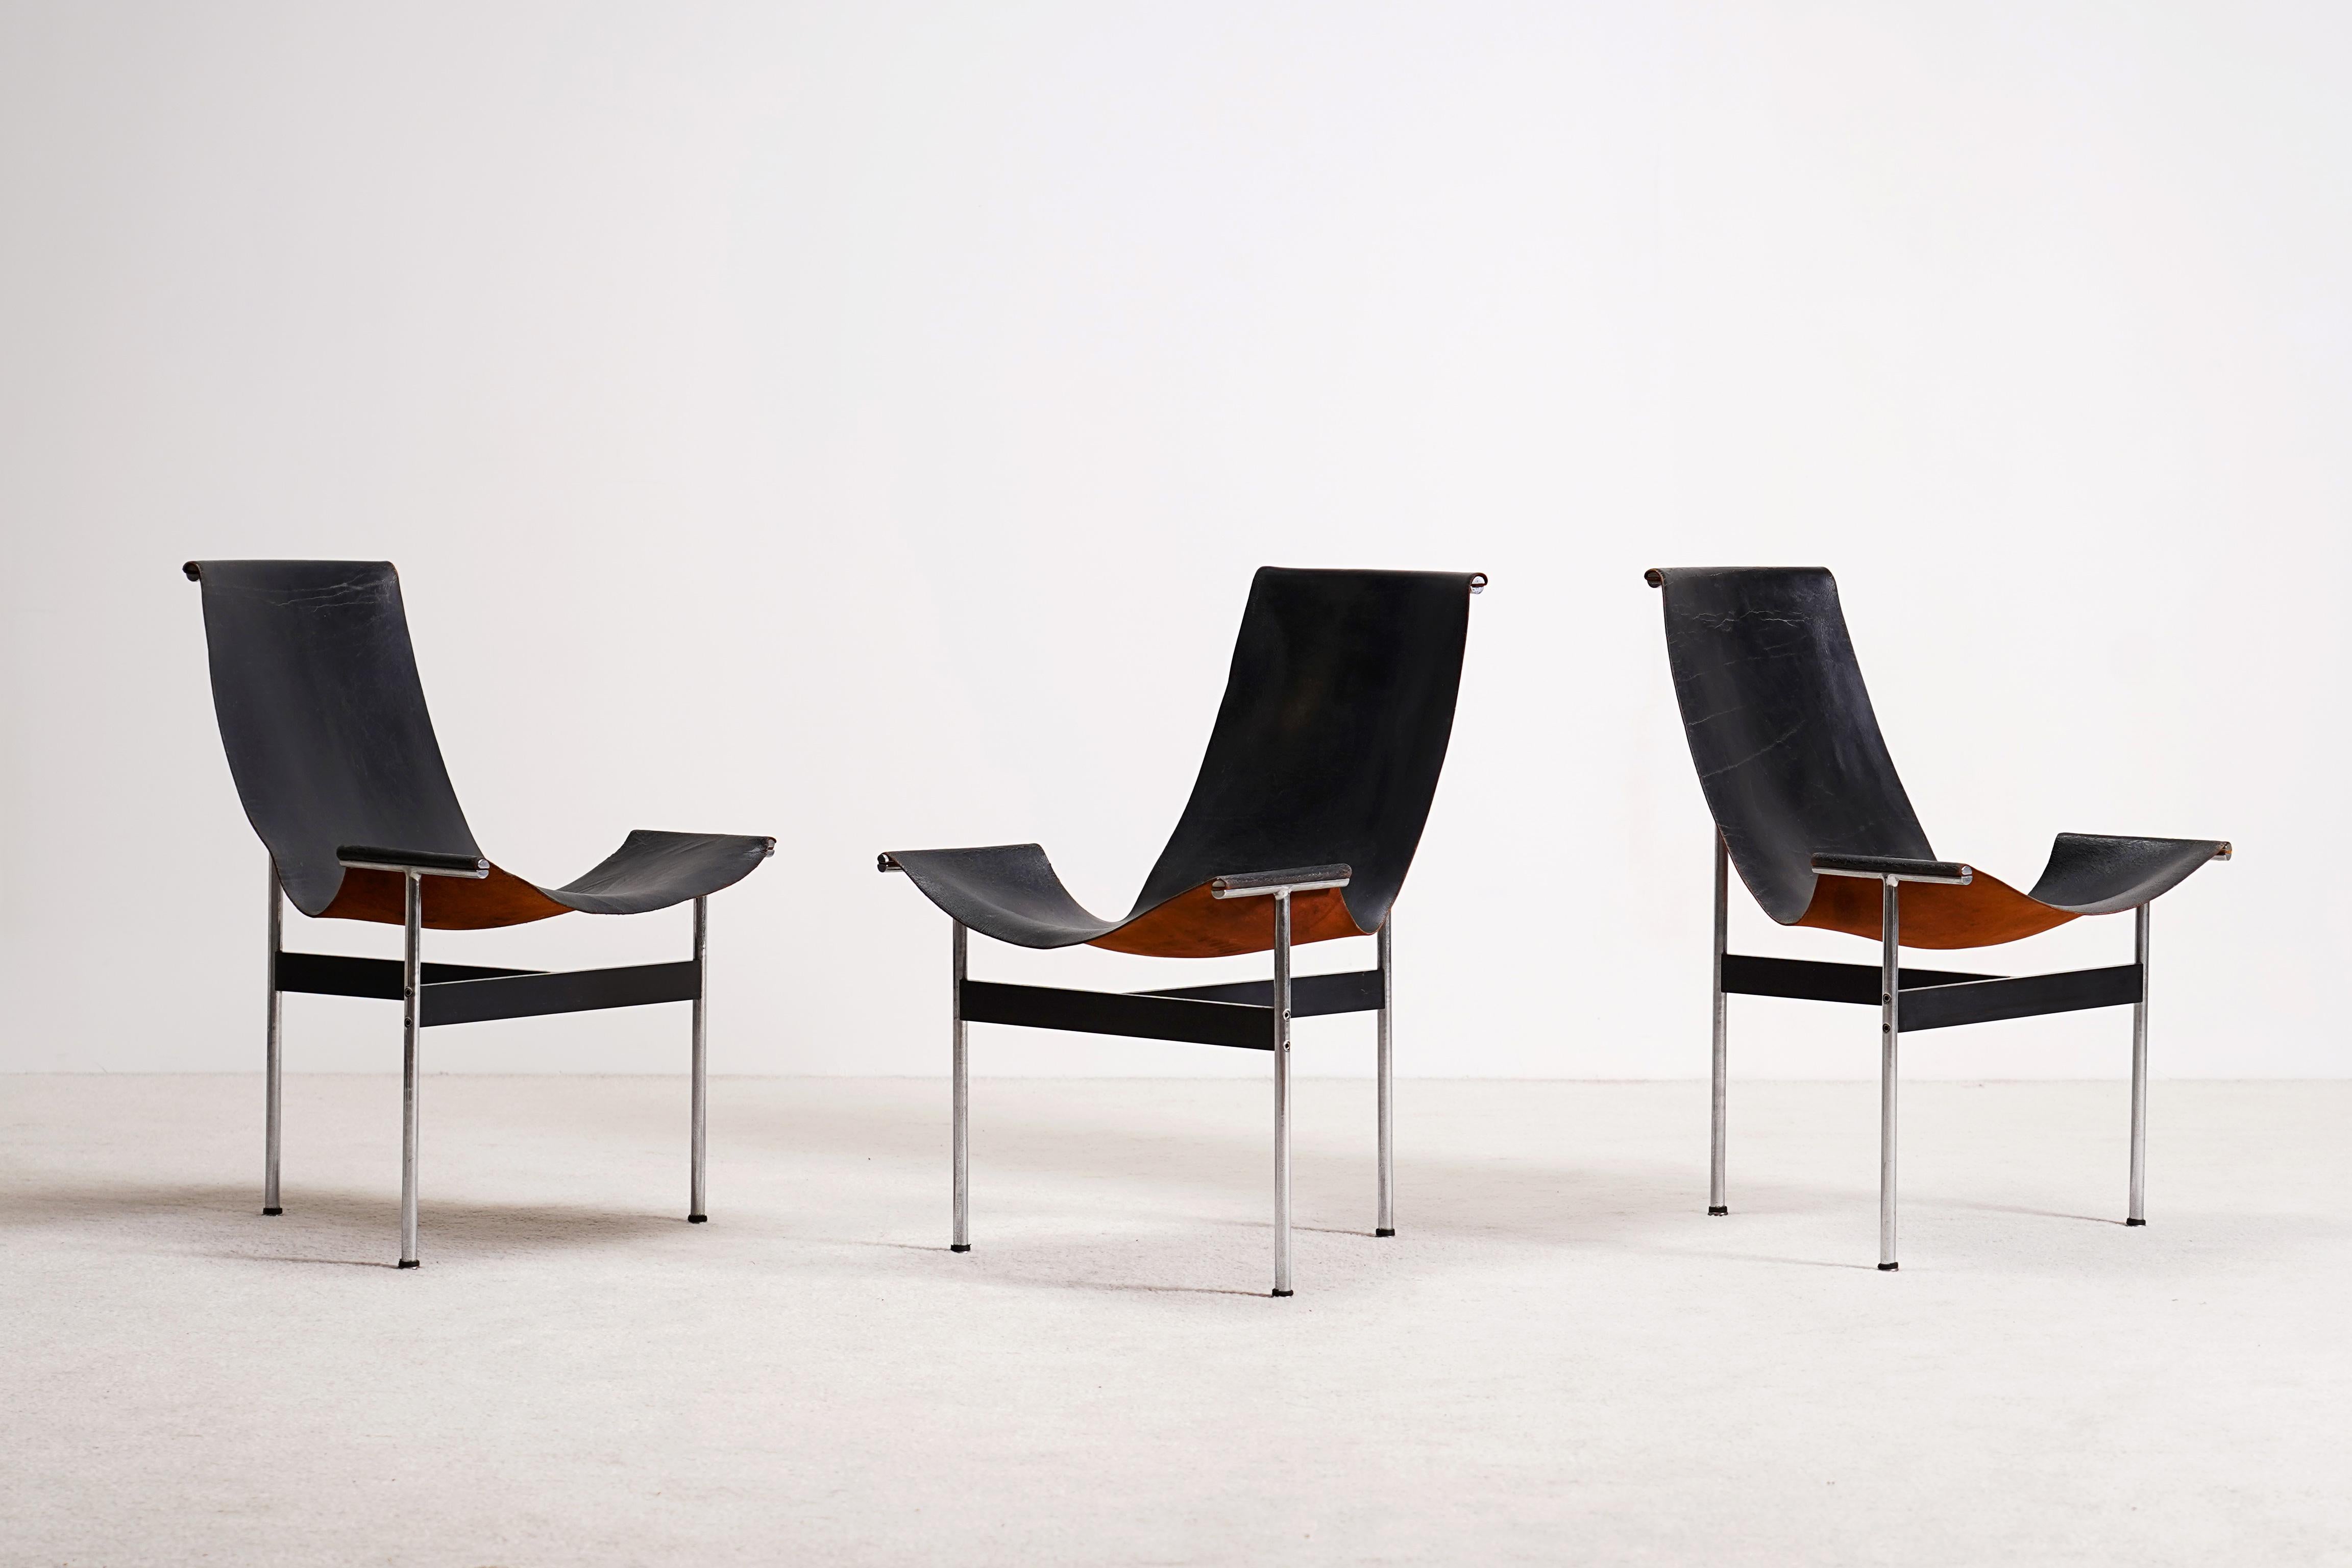 Satz von 3 dreibeinigen Stühlen, Modell T-Chair, entworfen von Katavolos, Kelley und Littell in den Jahren 1952 / 1953. Drei T-förmige Stahlbeine halten das schwarze Leder in Position. Das Leder ist nur an drei Punkten mit dem Rahmen verbunden,